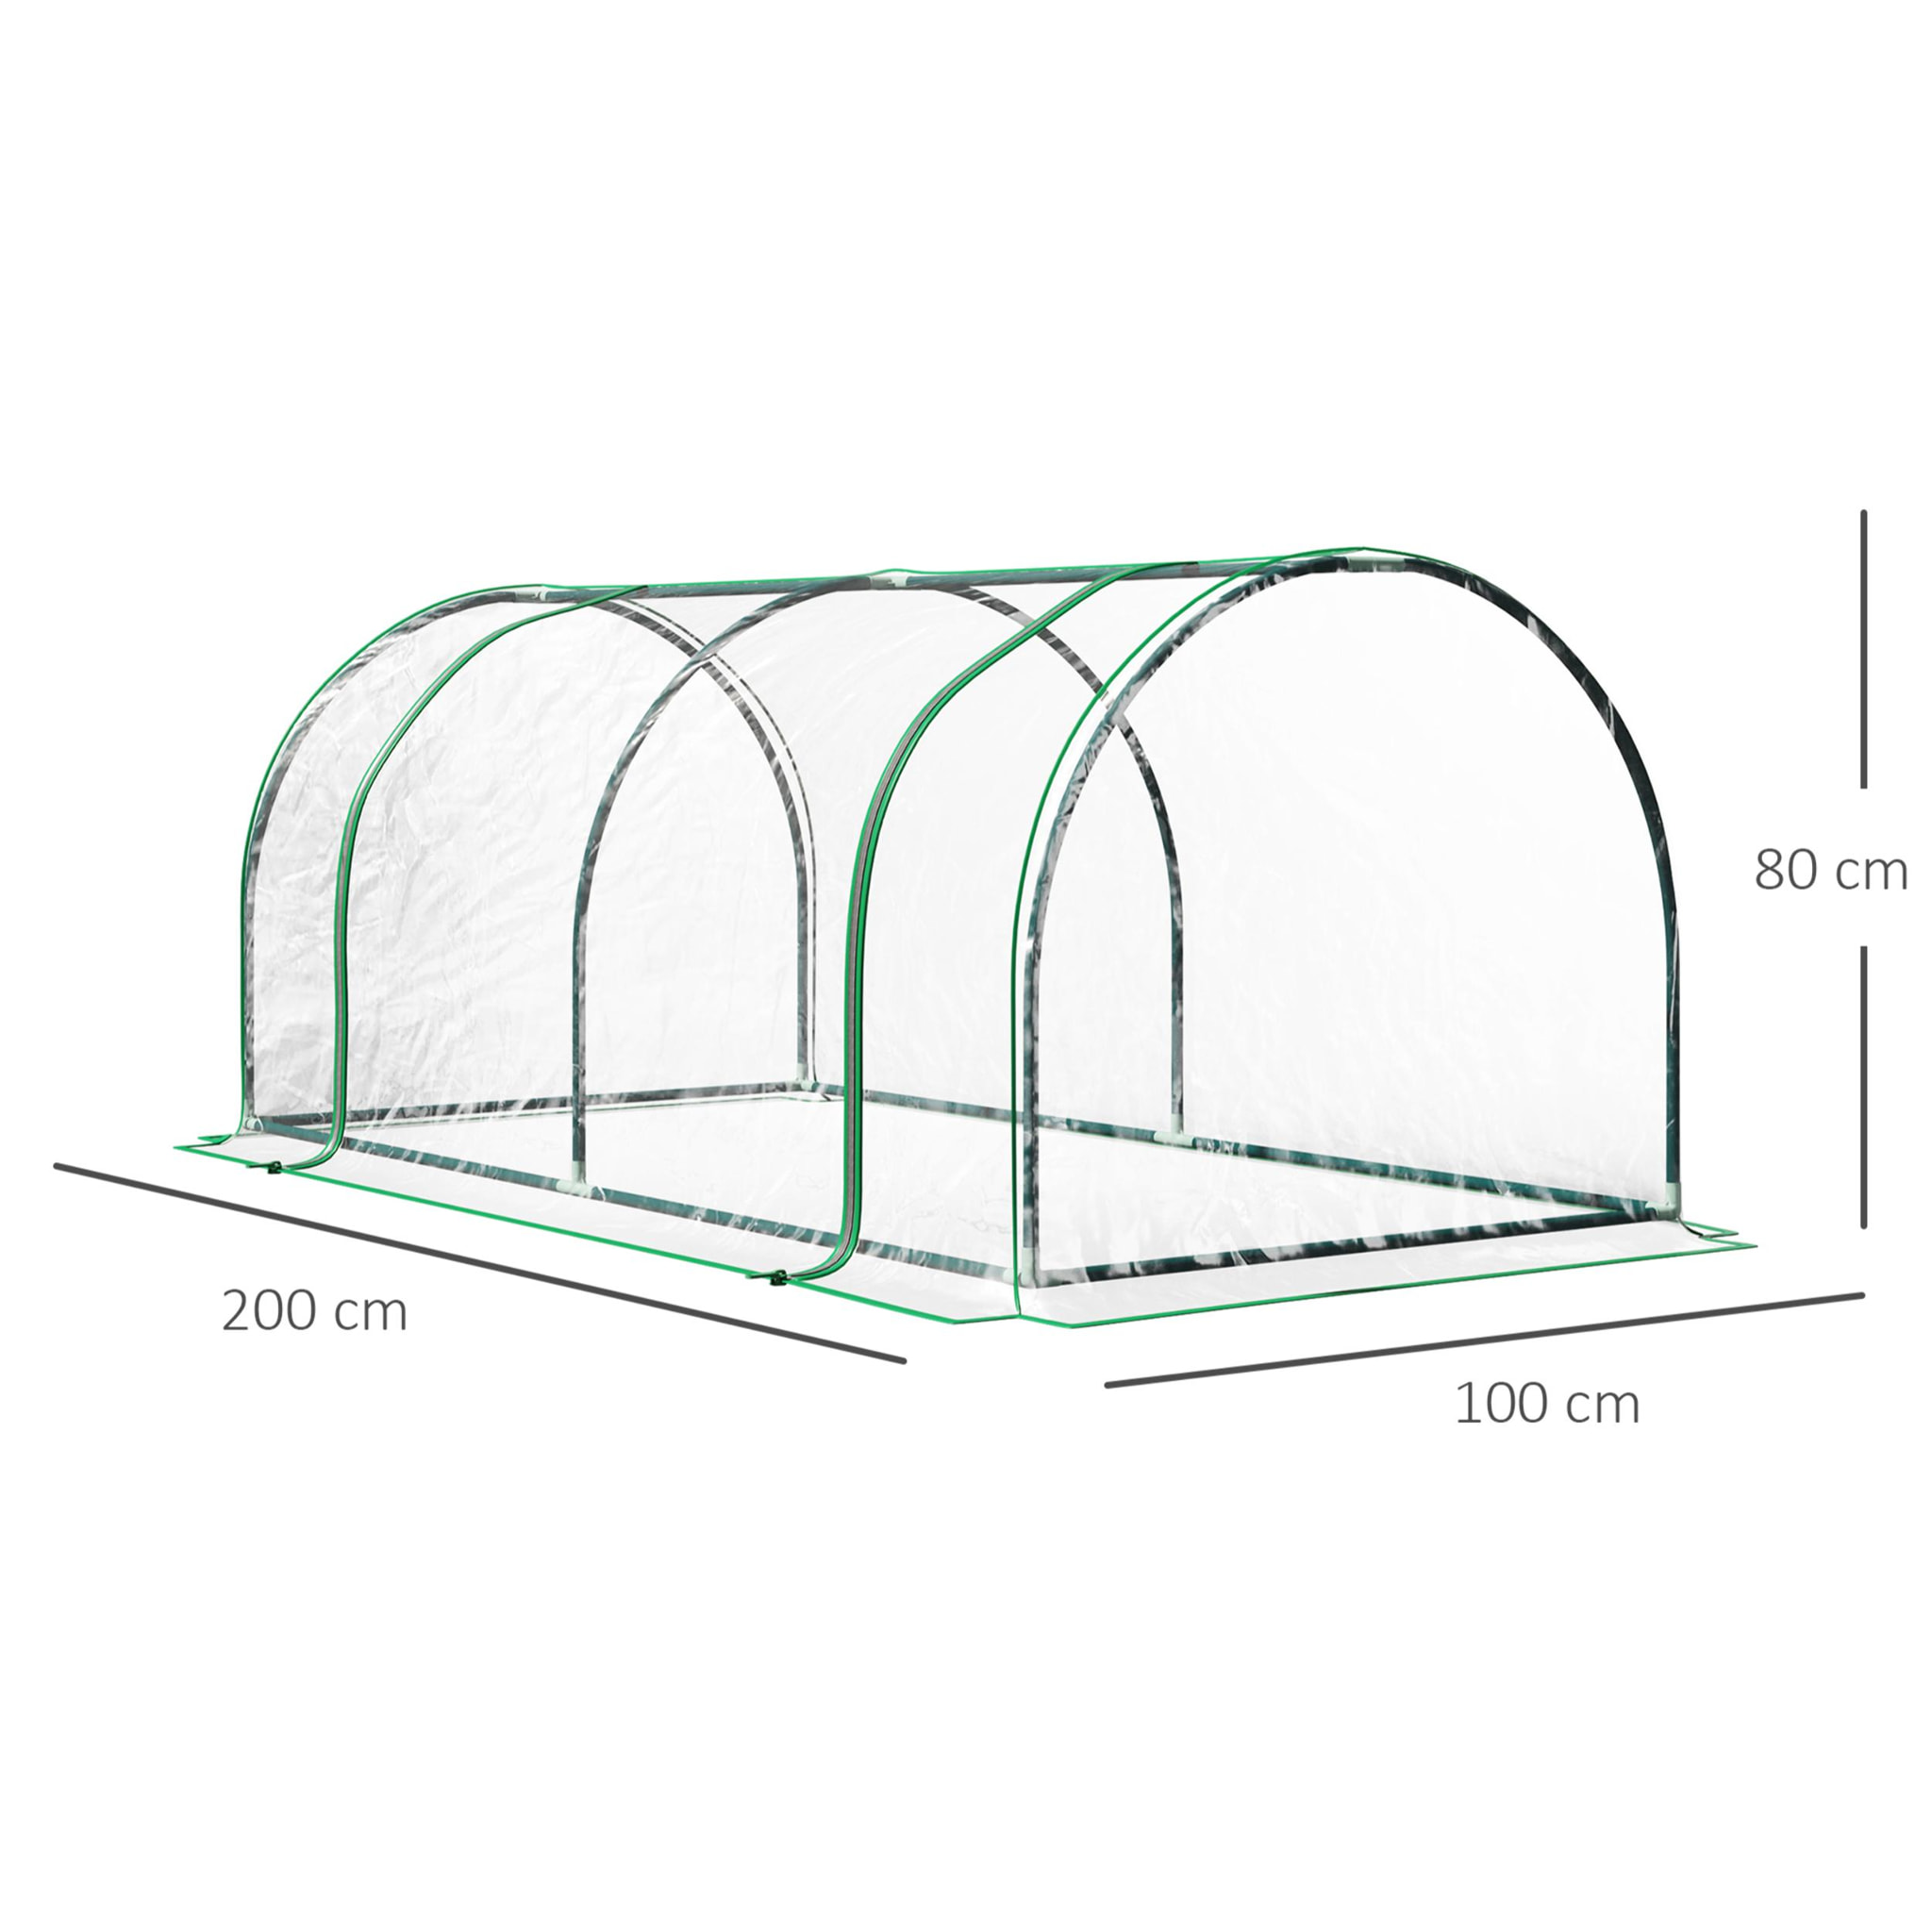 Serre de jardin tunnel serre à tomates dim. 2L x 1l x 0,8H m 2 portes zippées bâche PVC transparent acier époxy vert